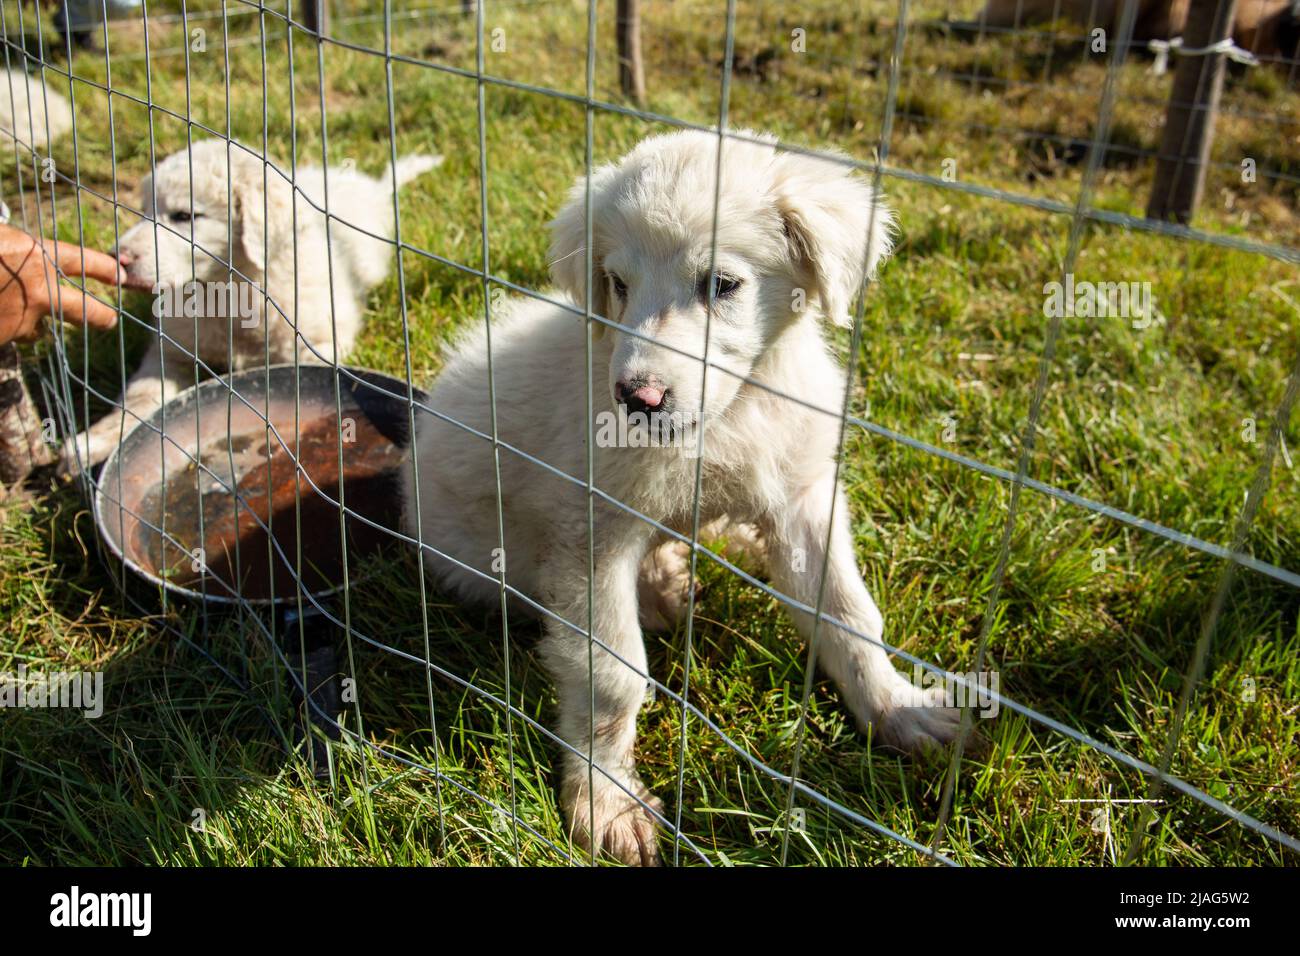 Piccolo carino bianco Abruzzo Maremma cucciolo di cane da pastore dietro una recinzione a rete metallica. Pastore abruzzese doggie. Foto Stock